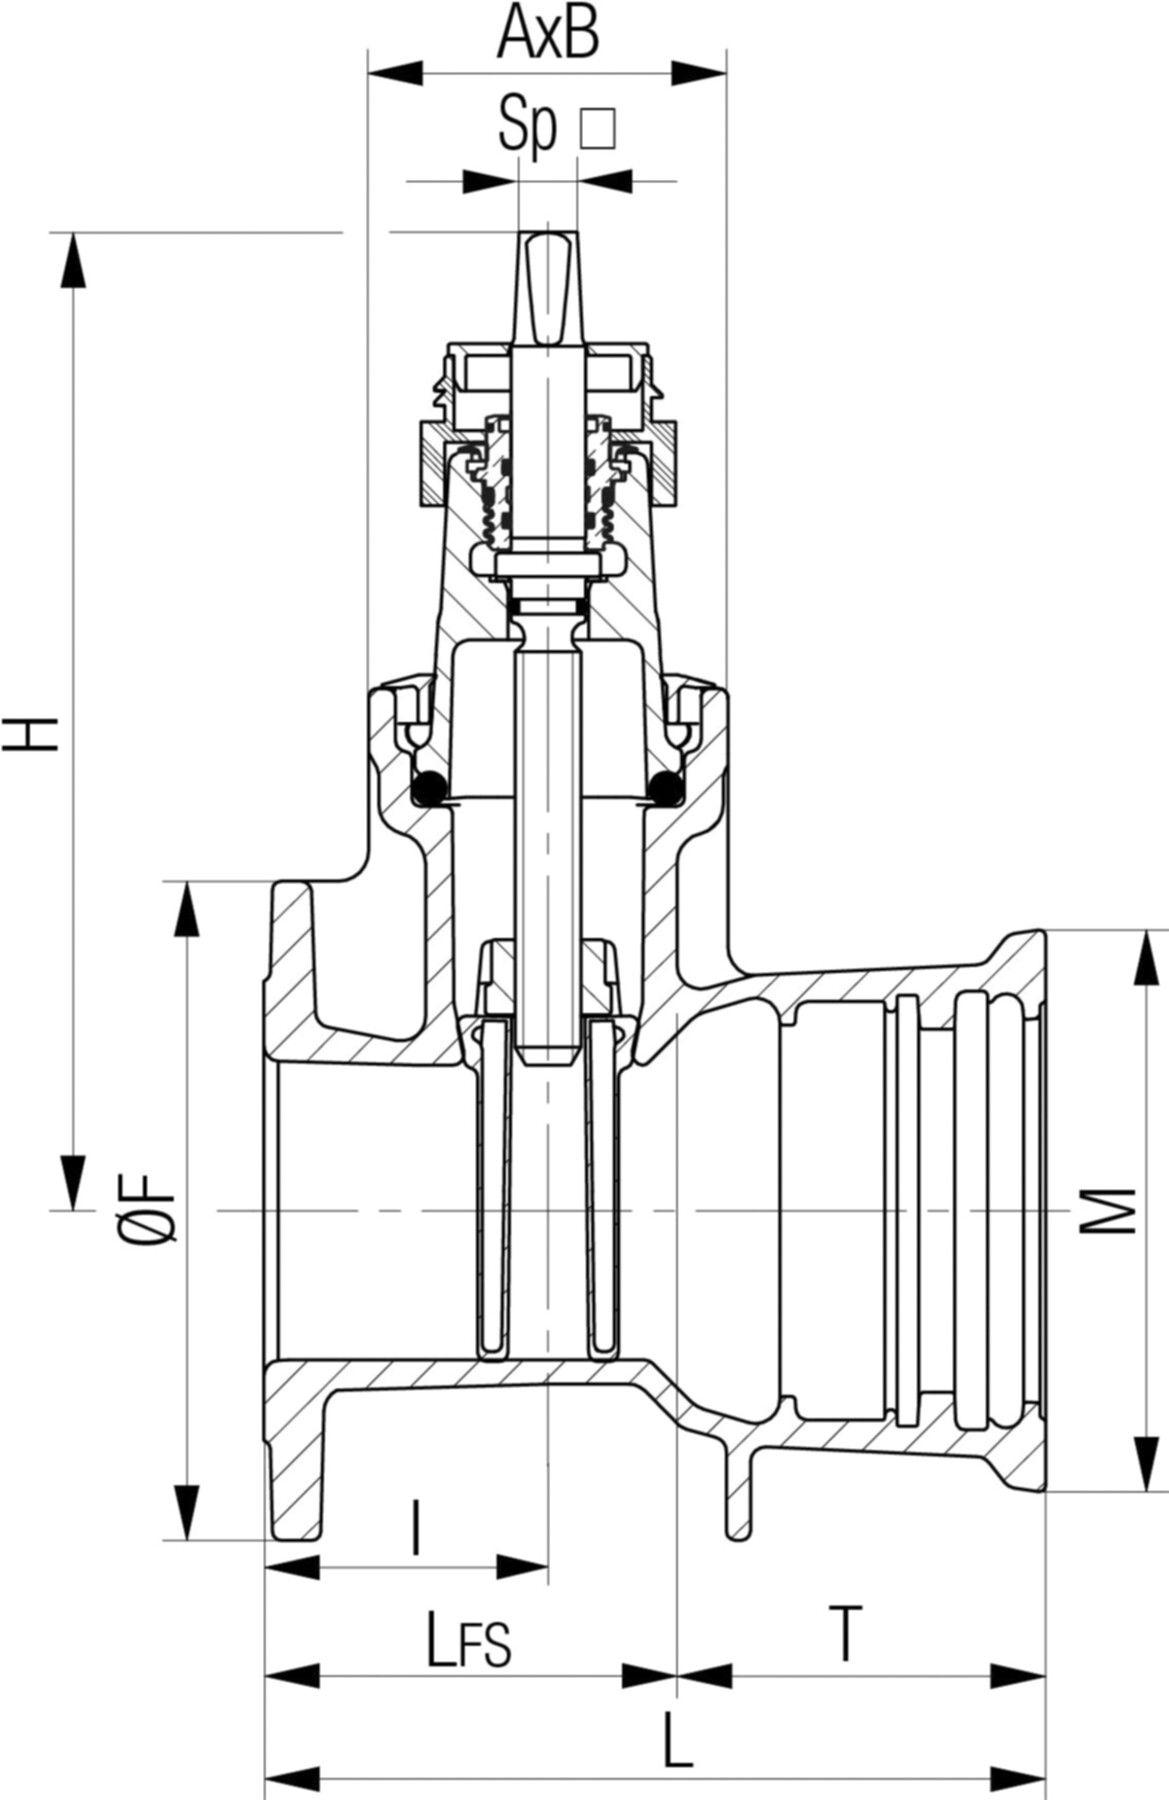 Flansch-/Steckmuffenschieber Fig. 5456 DN 300 PN 16 - Von Roll Armaturen